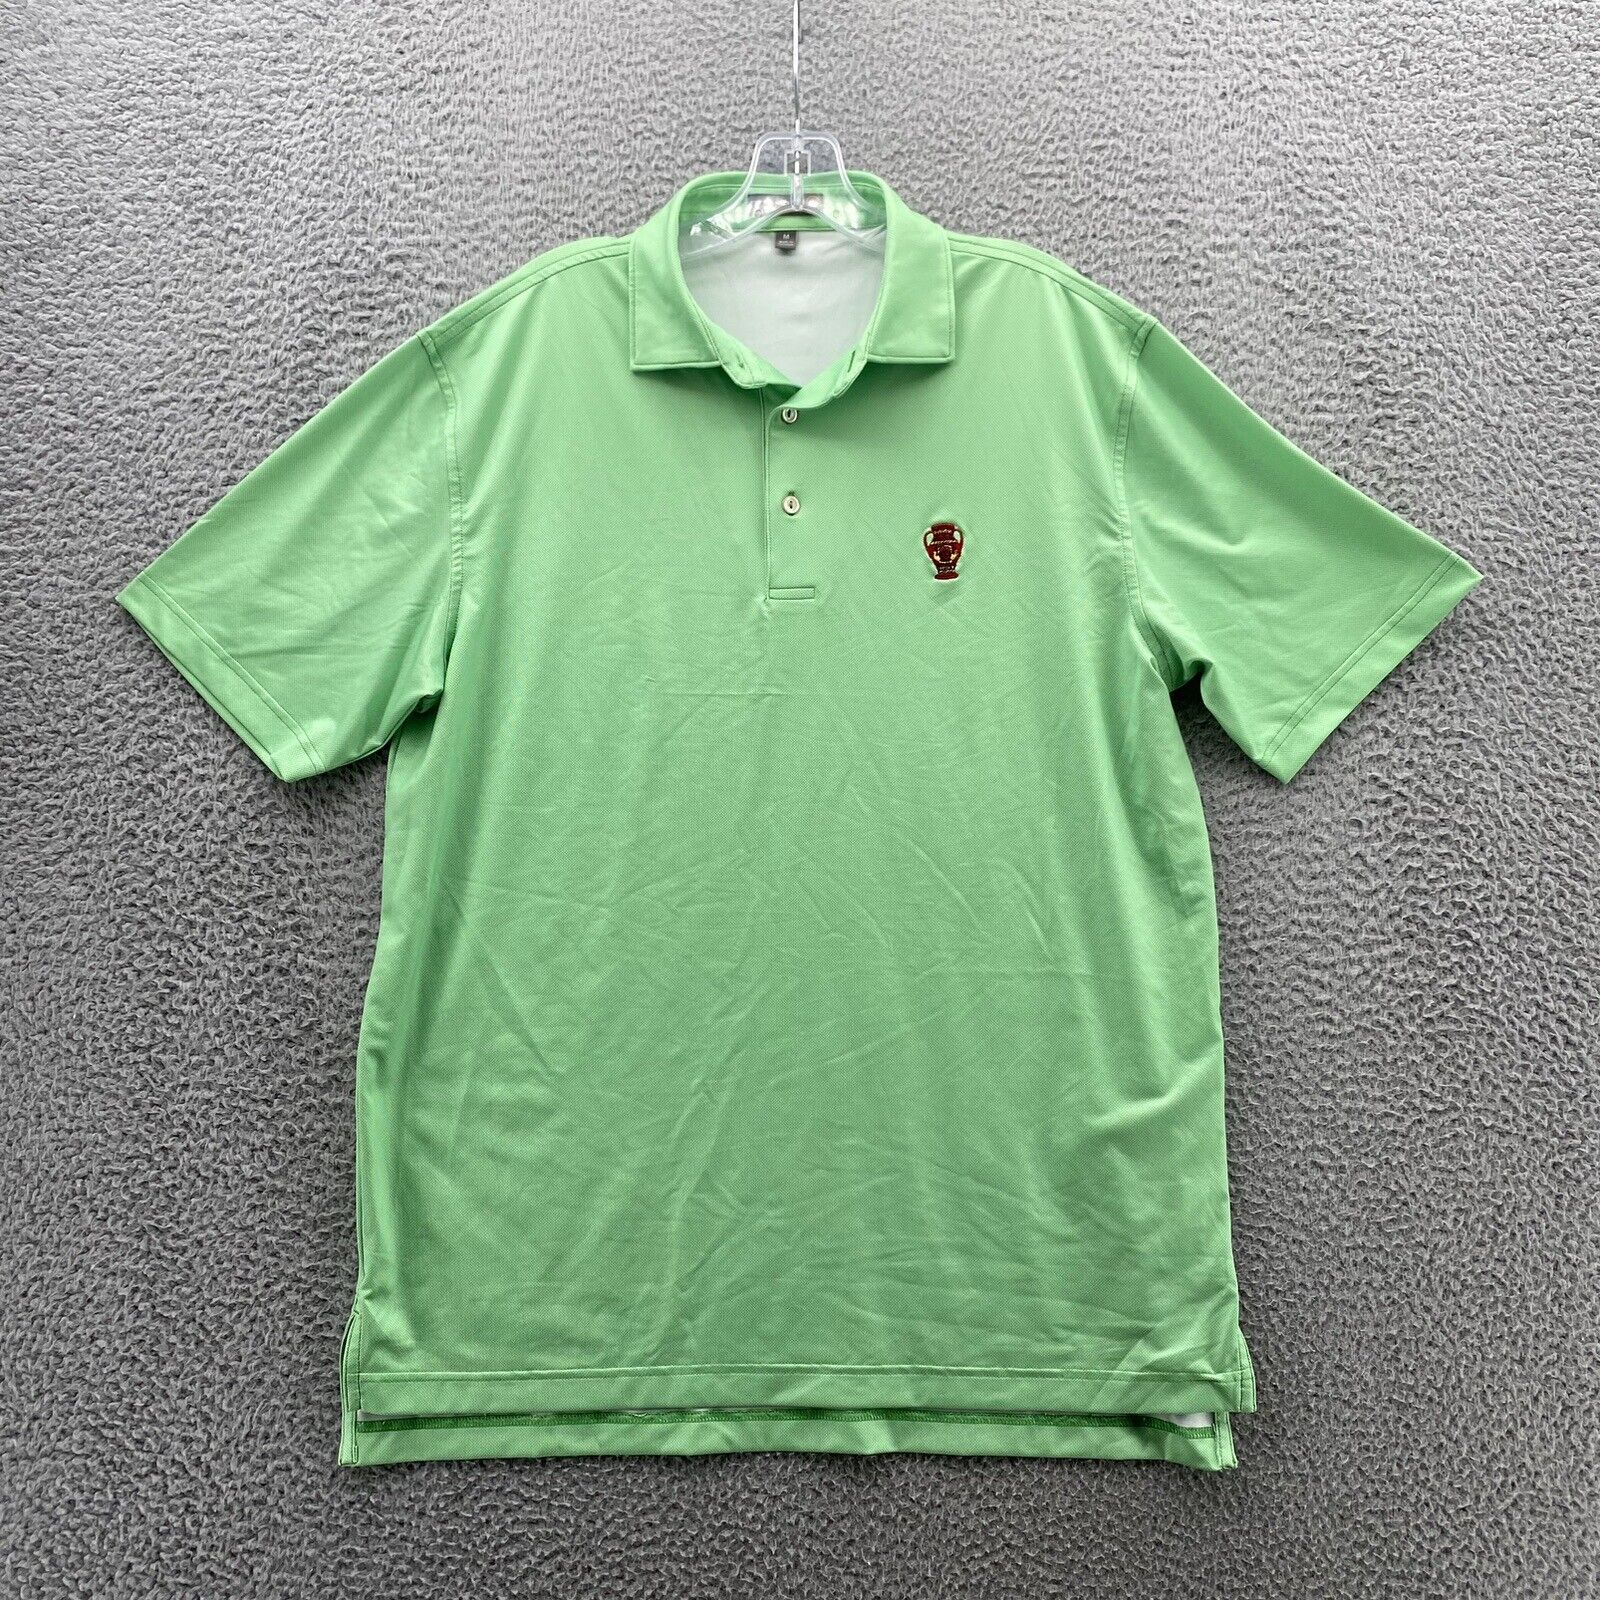 NWOT Peter Millar Shirt Adult M Green Golf Polo SummerComfort Casual Outdoor Men